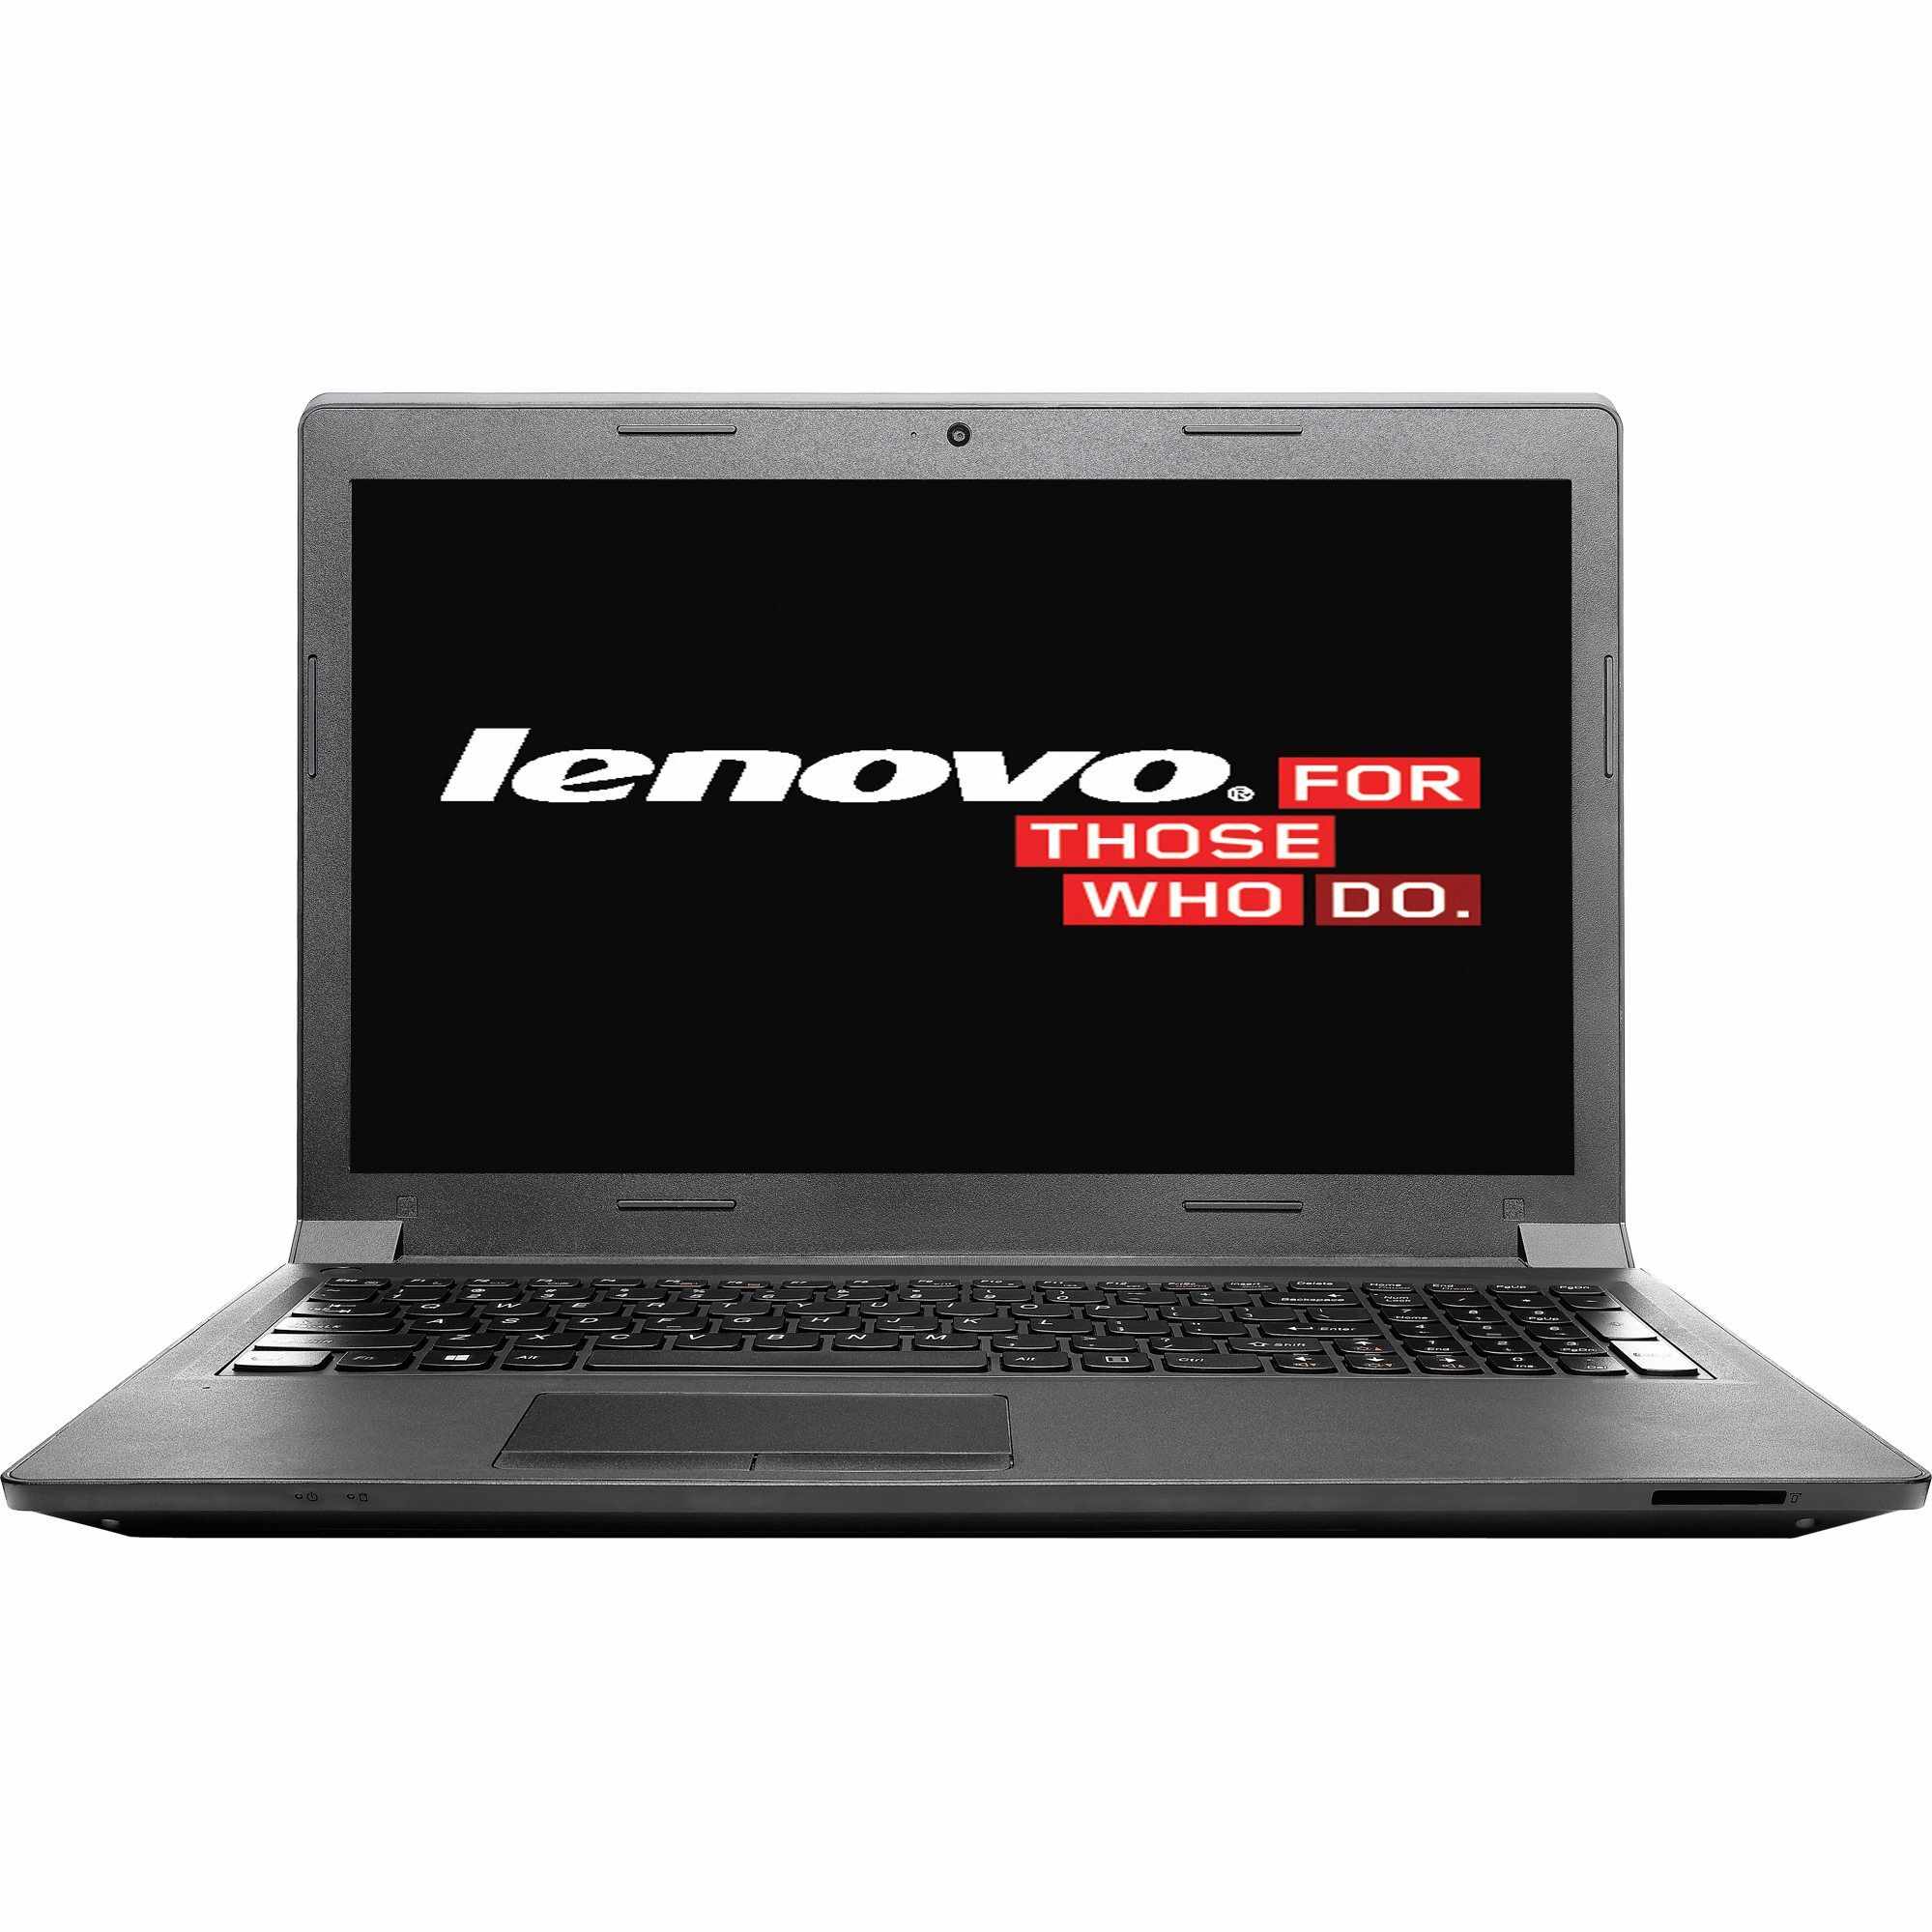 Laptop Lenovo B5400, Intel Core i3-4000M 2.40GHz, 4GB DDR3, 500GB SATA, DVD-RW, 15.6 Inch, Webcam